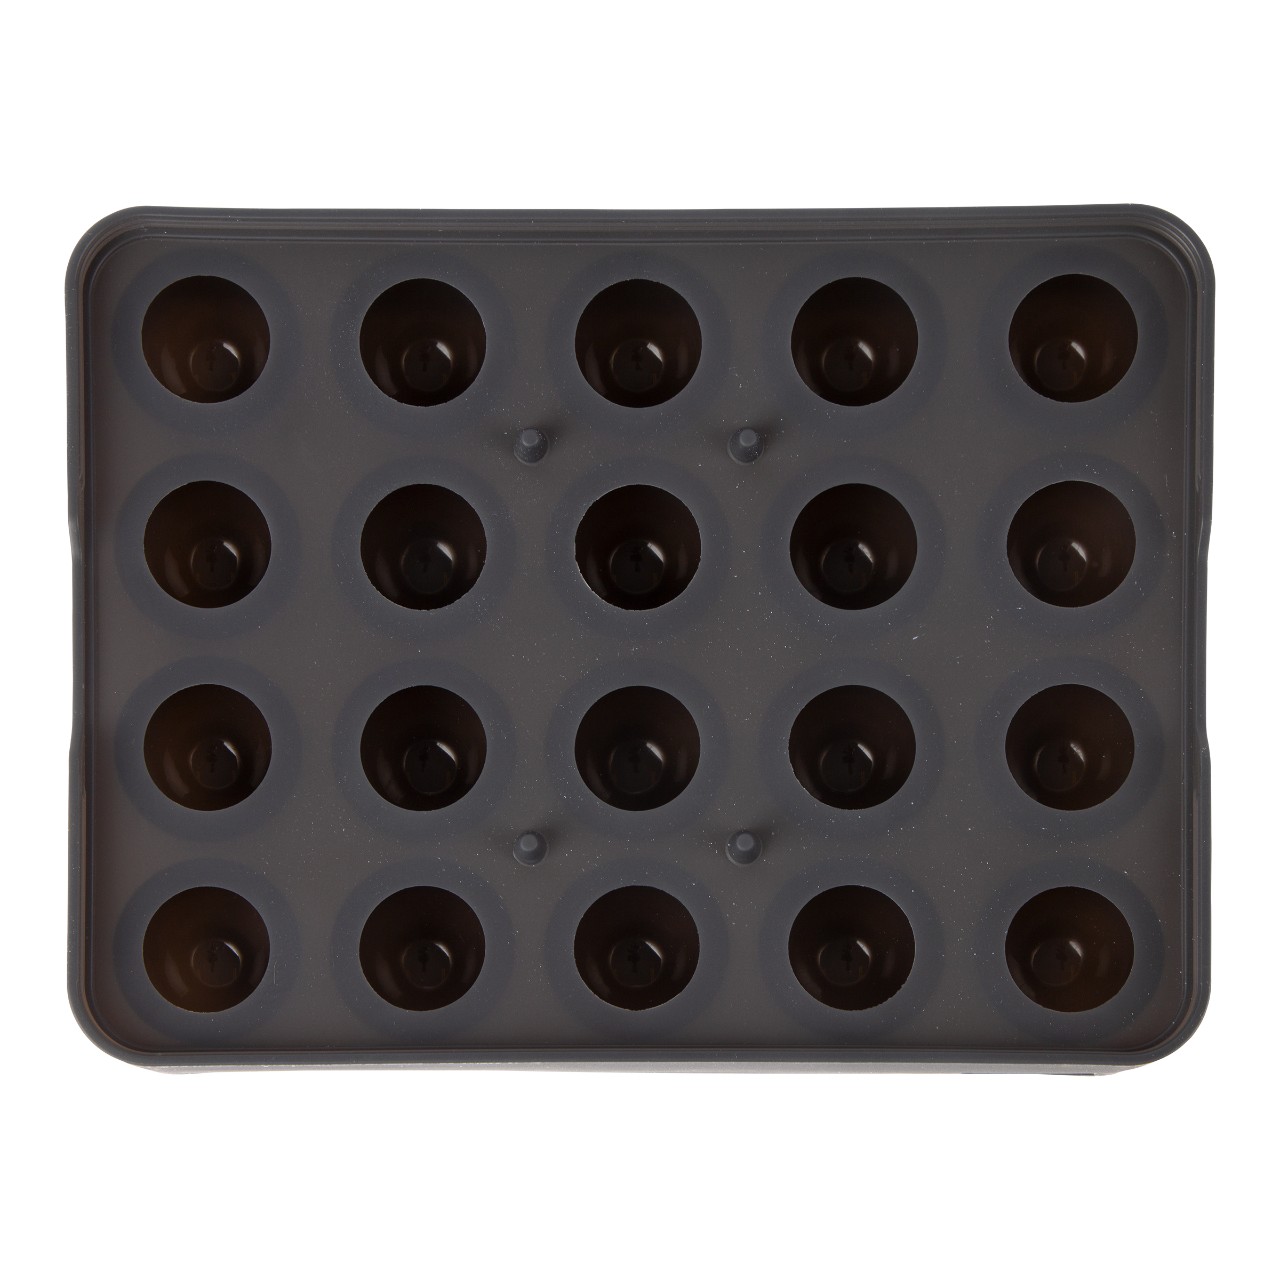 IJsblokjesvorm voor ijsballen met deksel  3 cm silicone, zwart